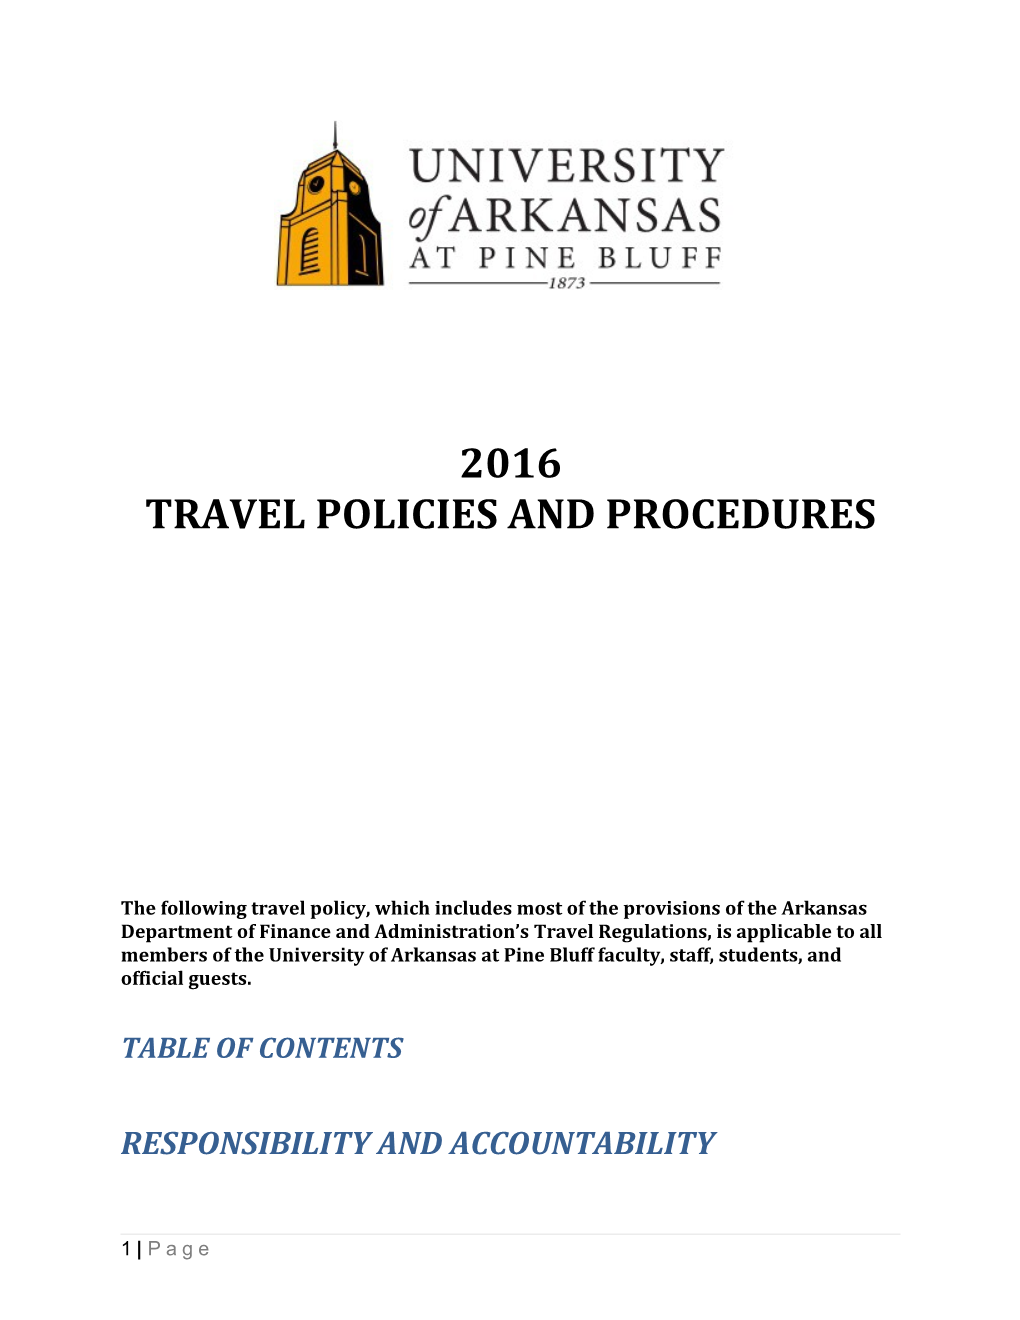 Travel Policies and Procedures